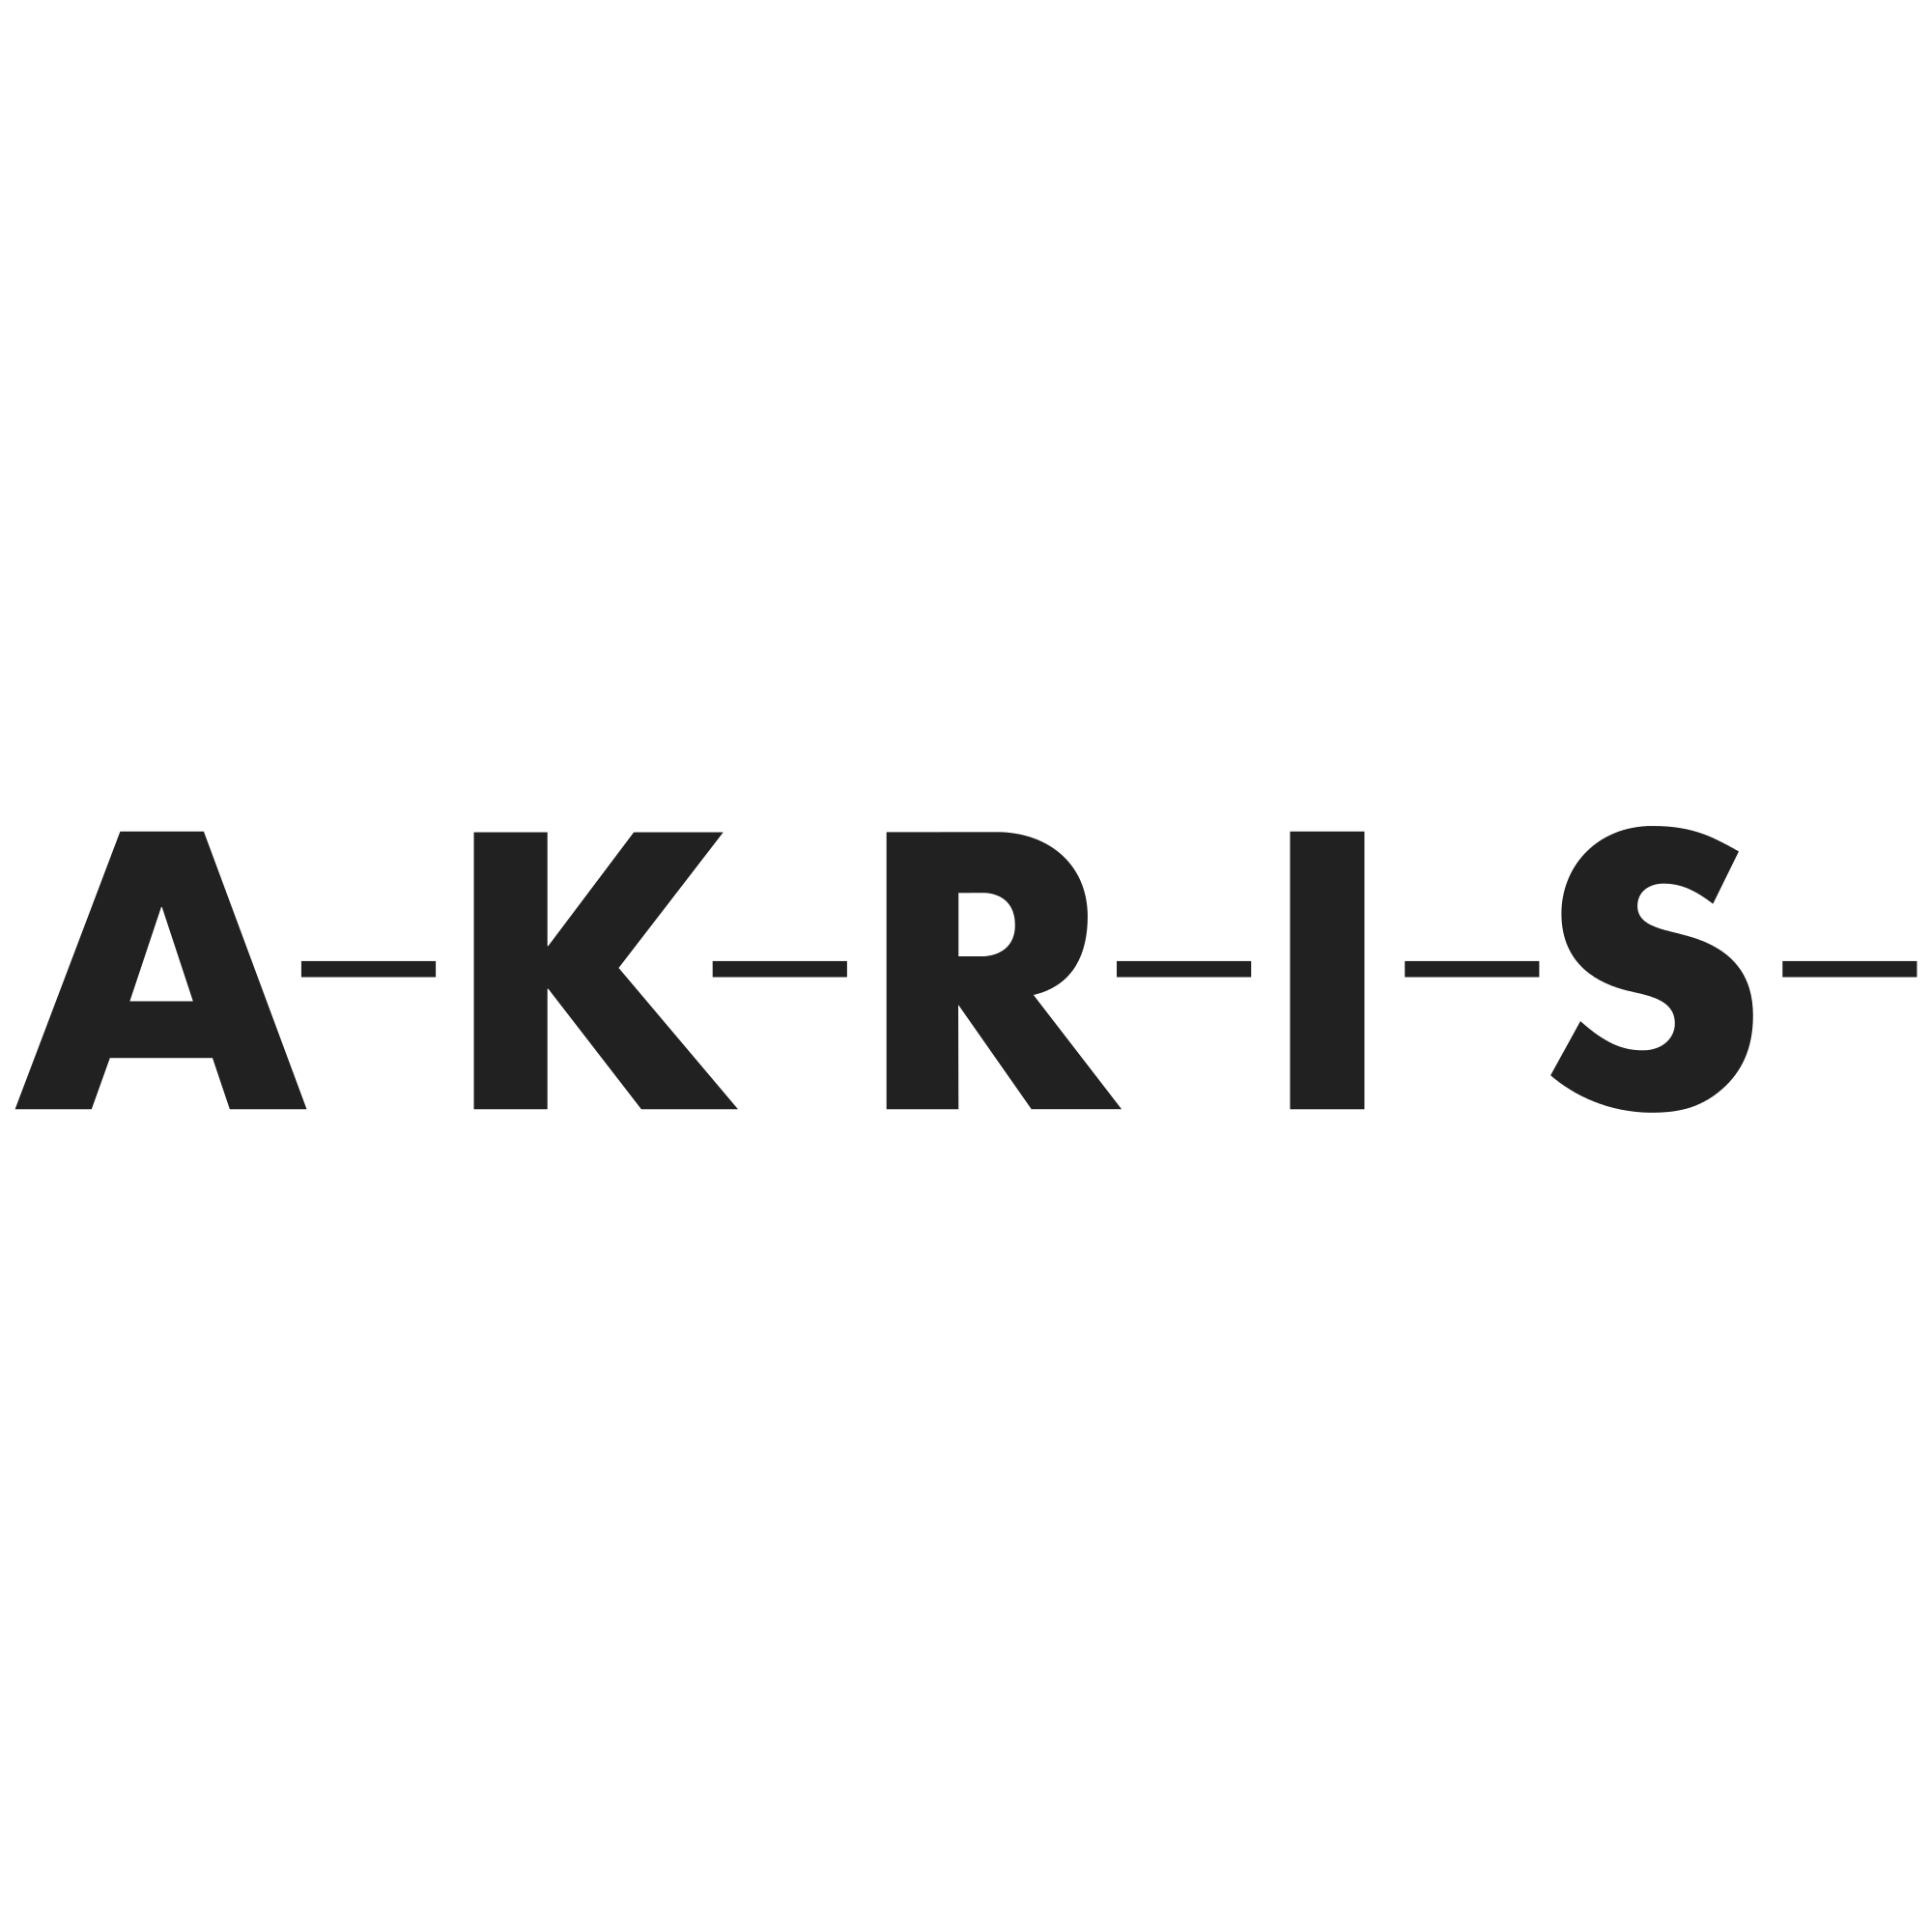 004_Akris_logo.svg copy.png